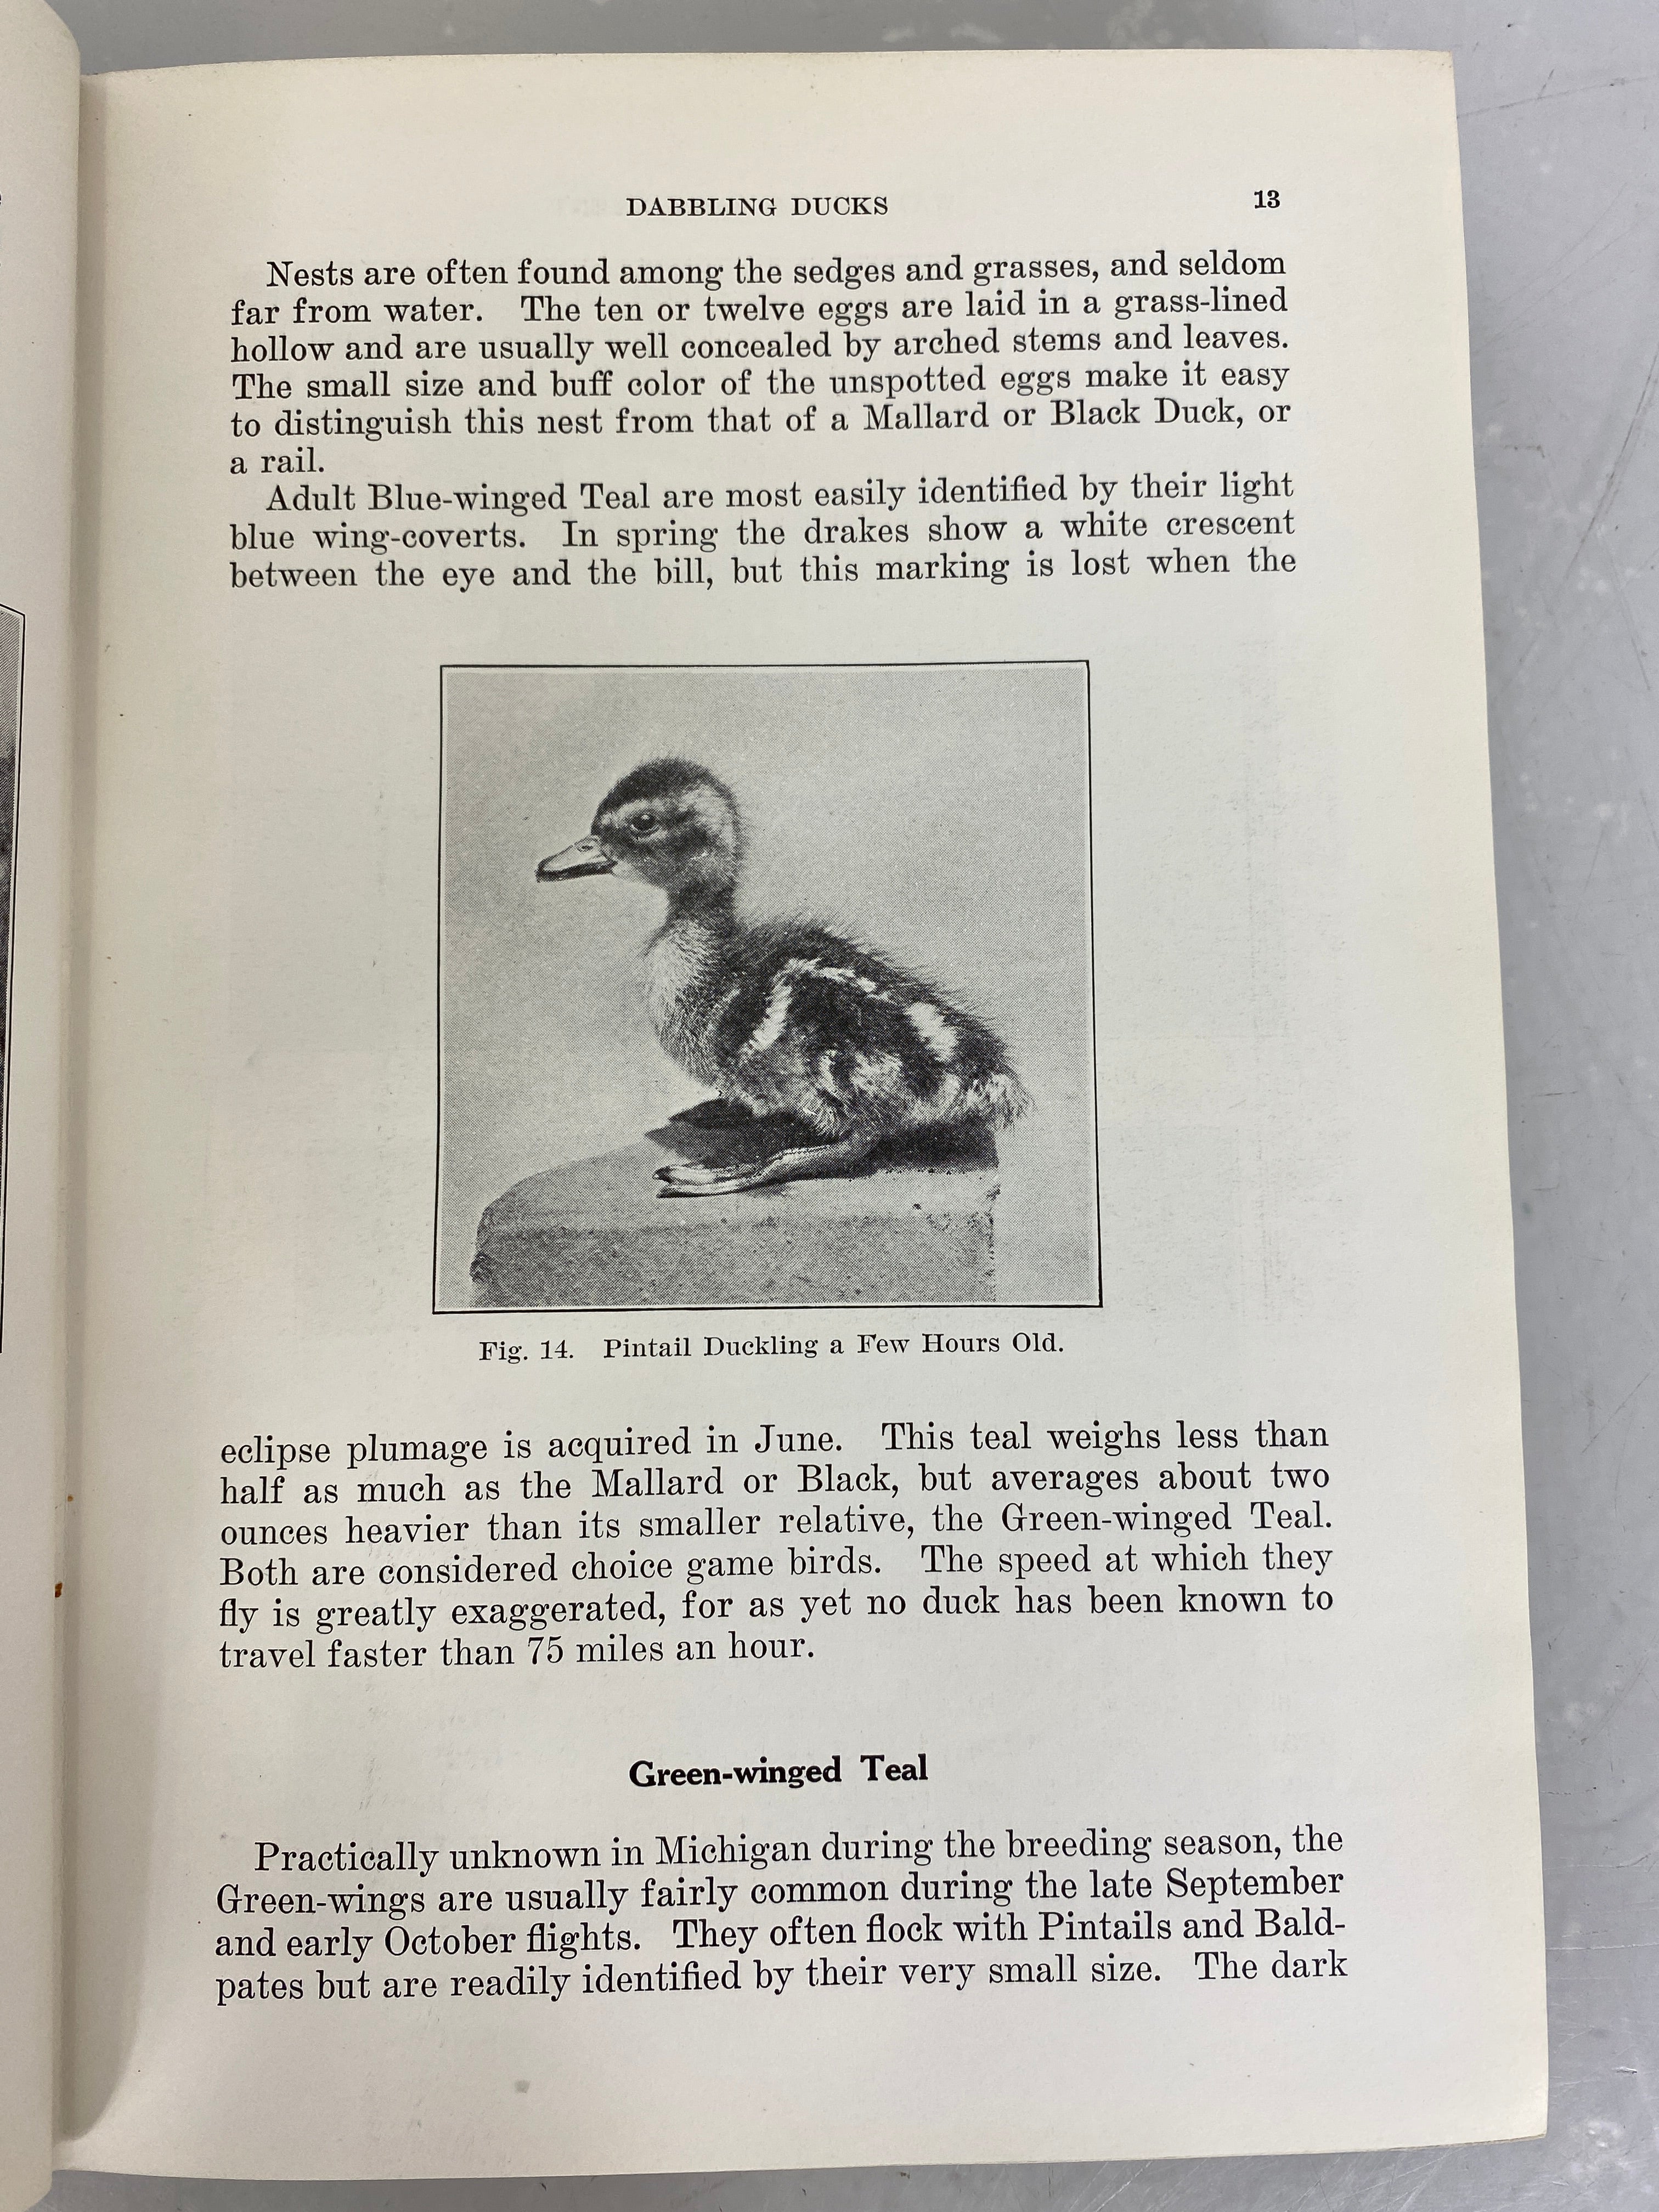 Michigan Waterfowl Management by Miles David Pirnie 1935 HC